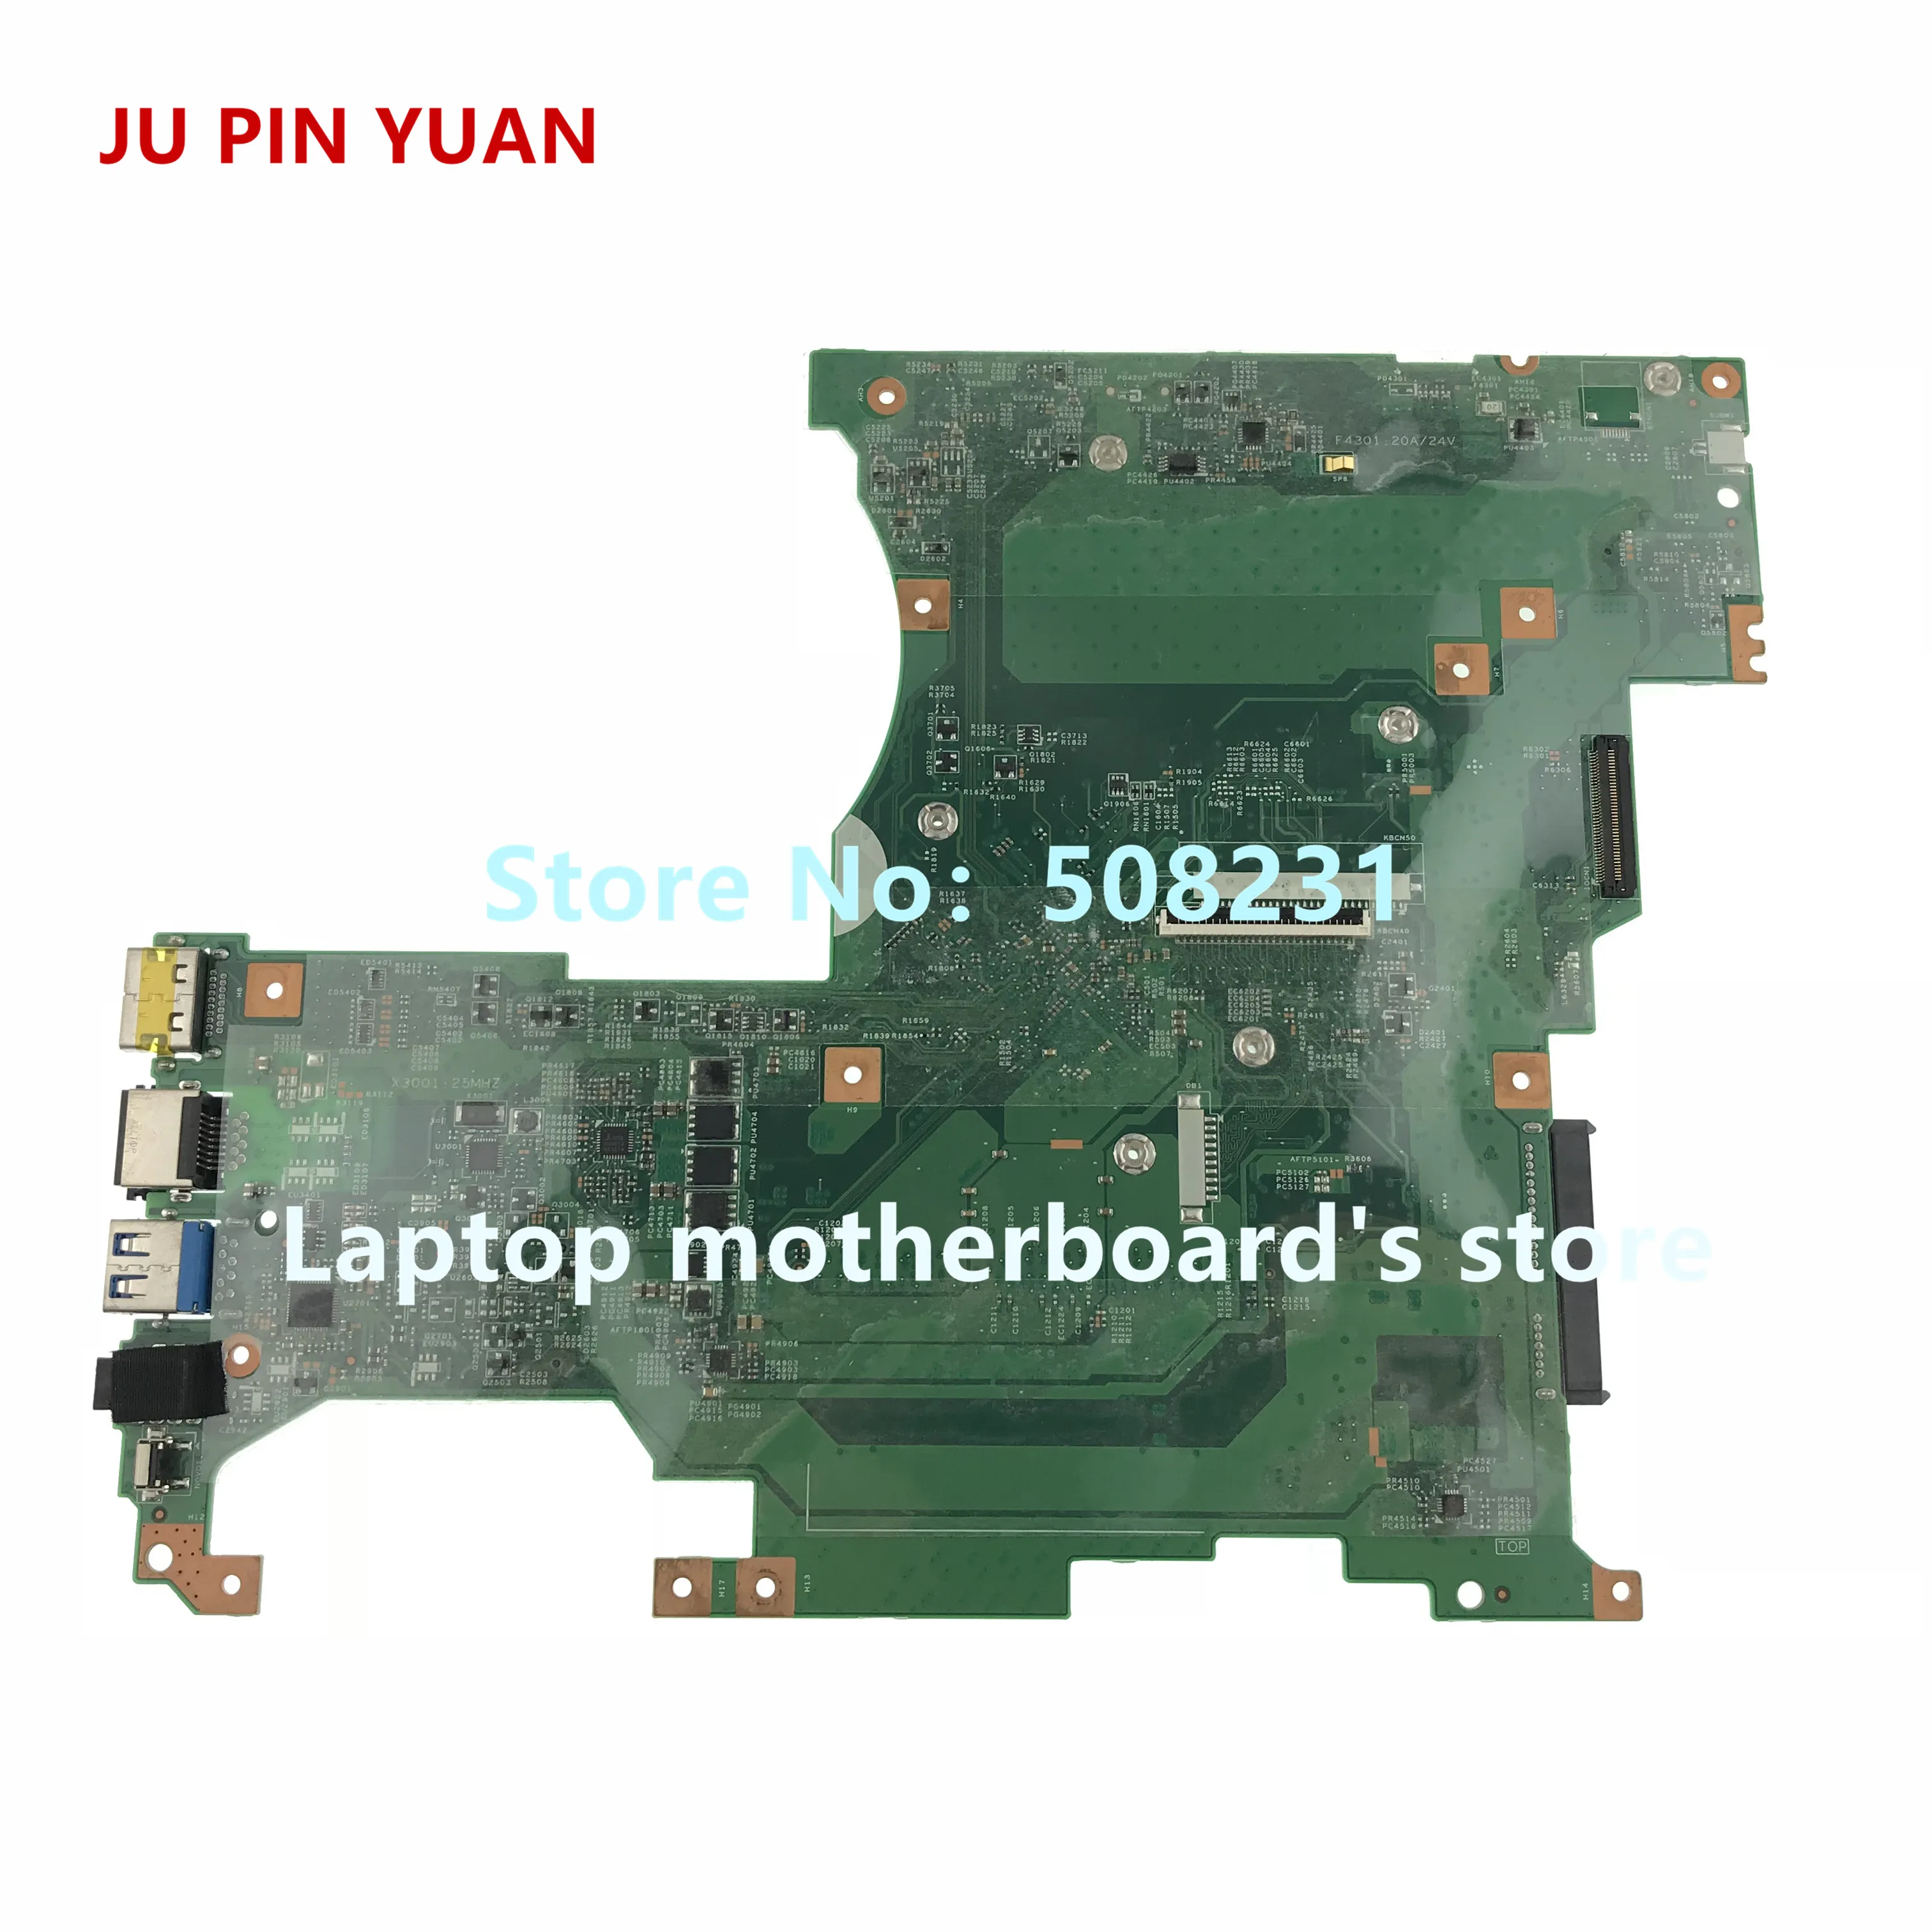 Ju pin yuan 5B20G54050 448.00U06. 0021  lenovo Ideapad Flex 2-14